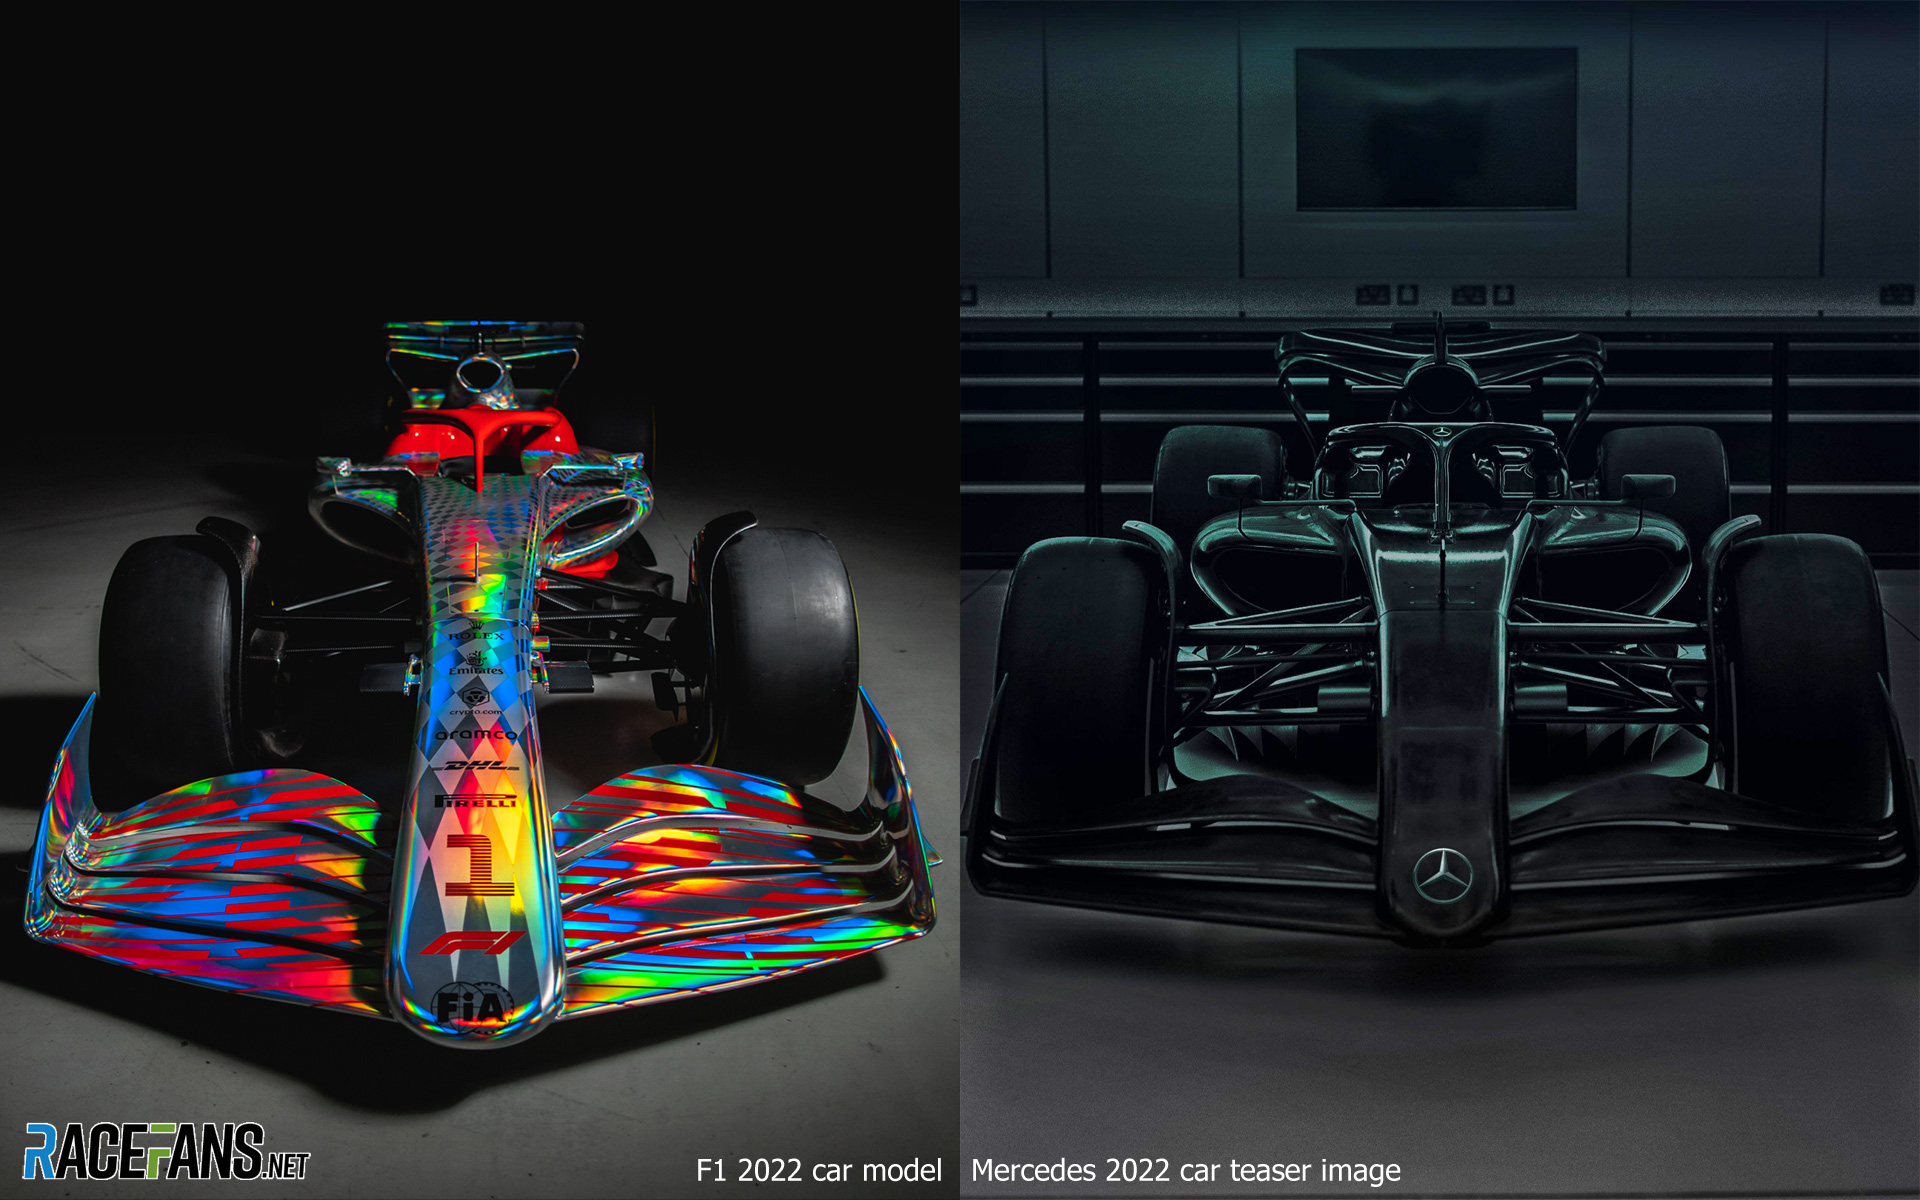 F1 2022 car model and Mercedes 2022 car teaser image